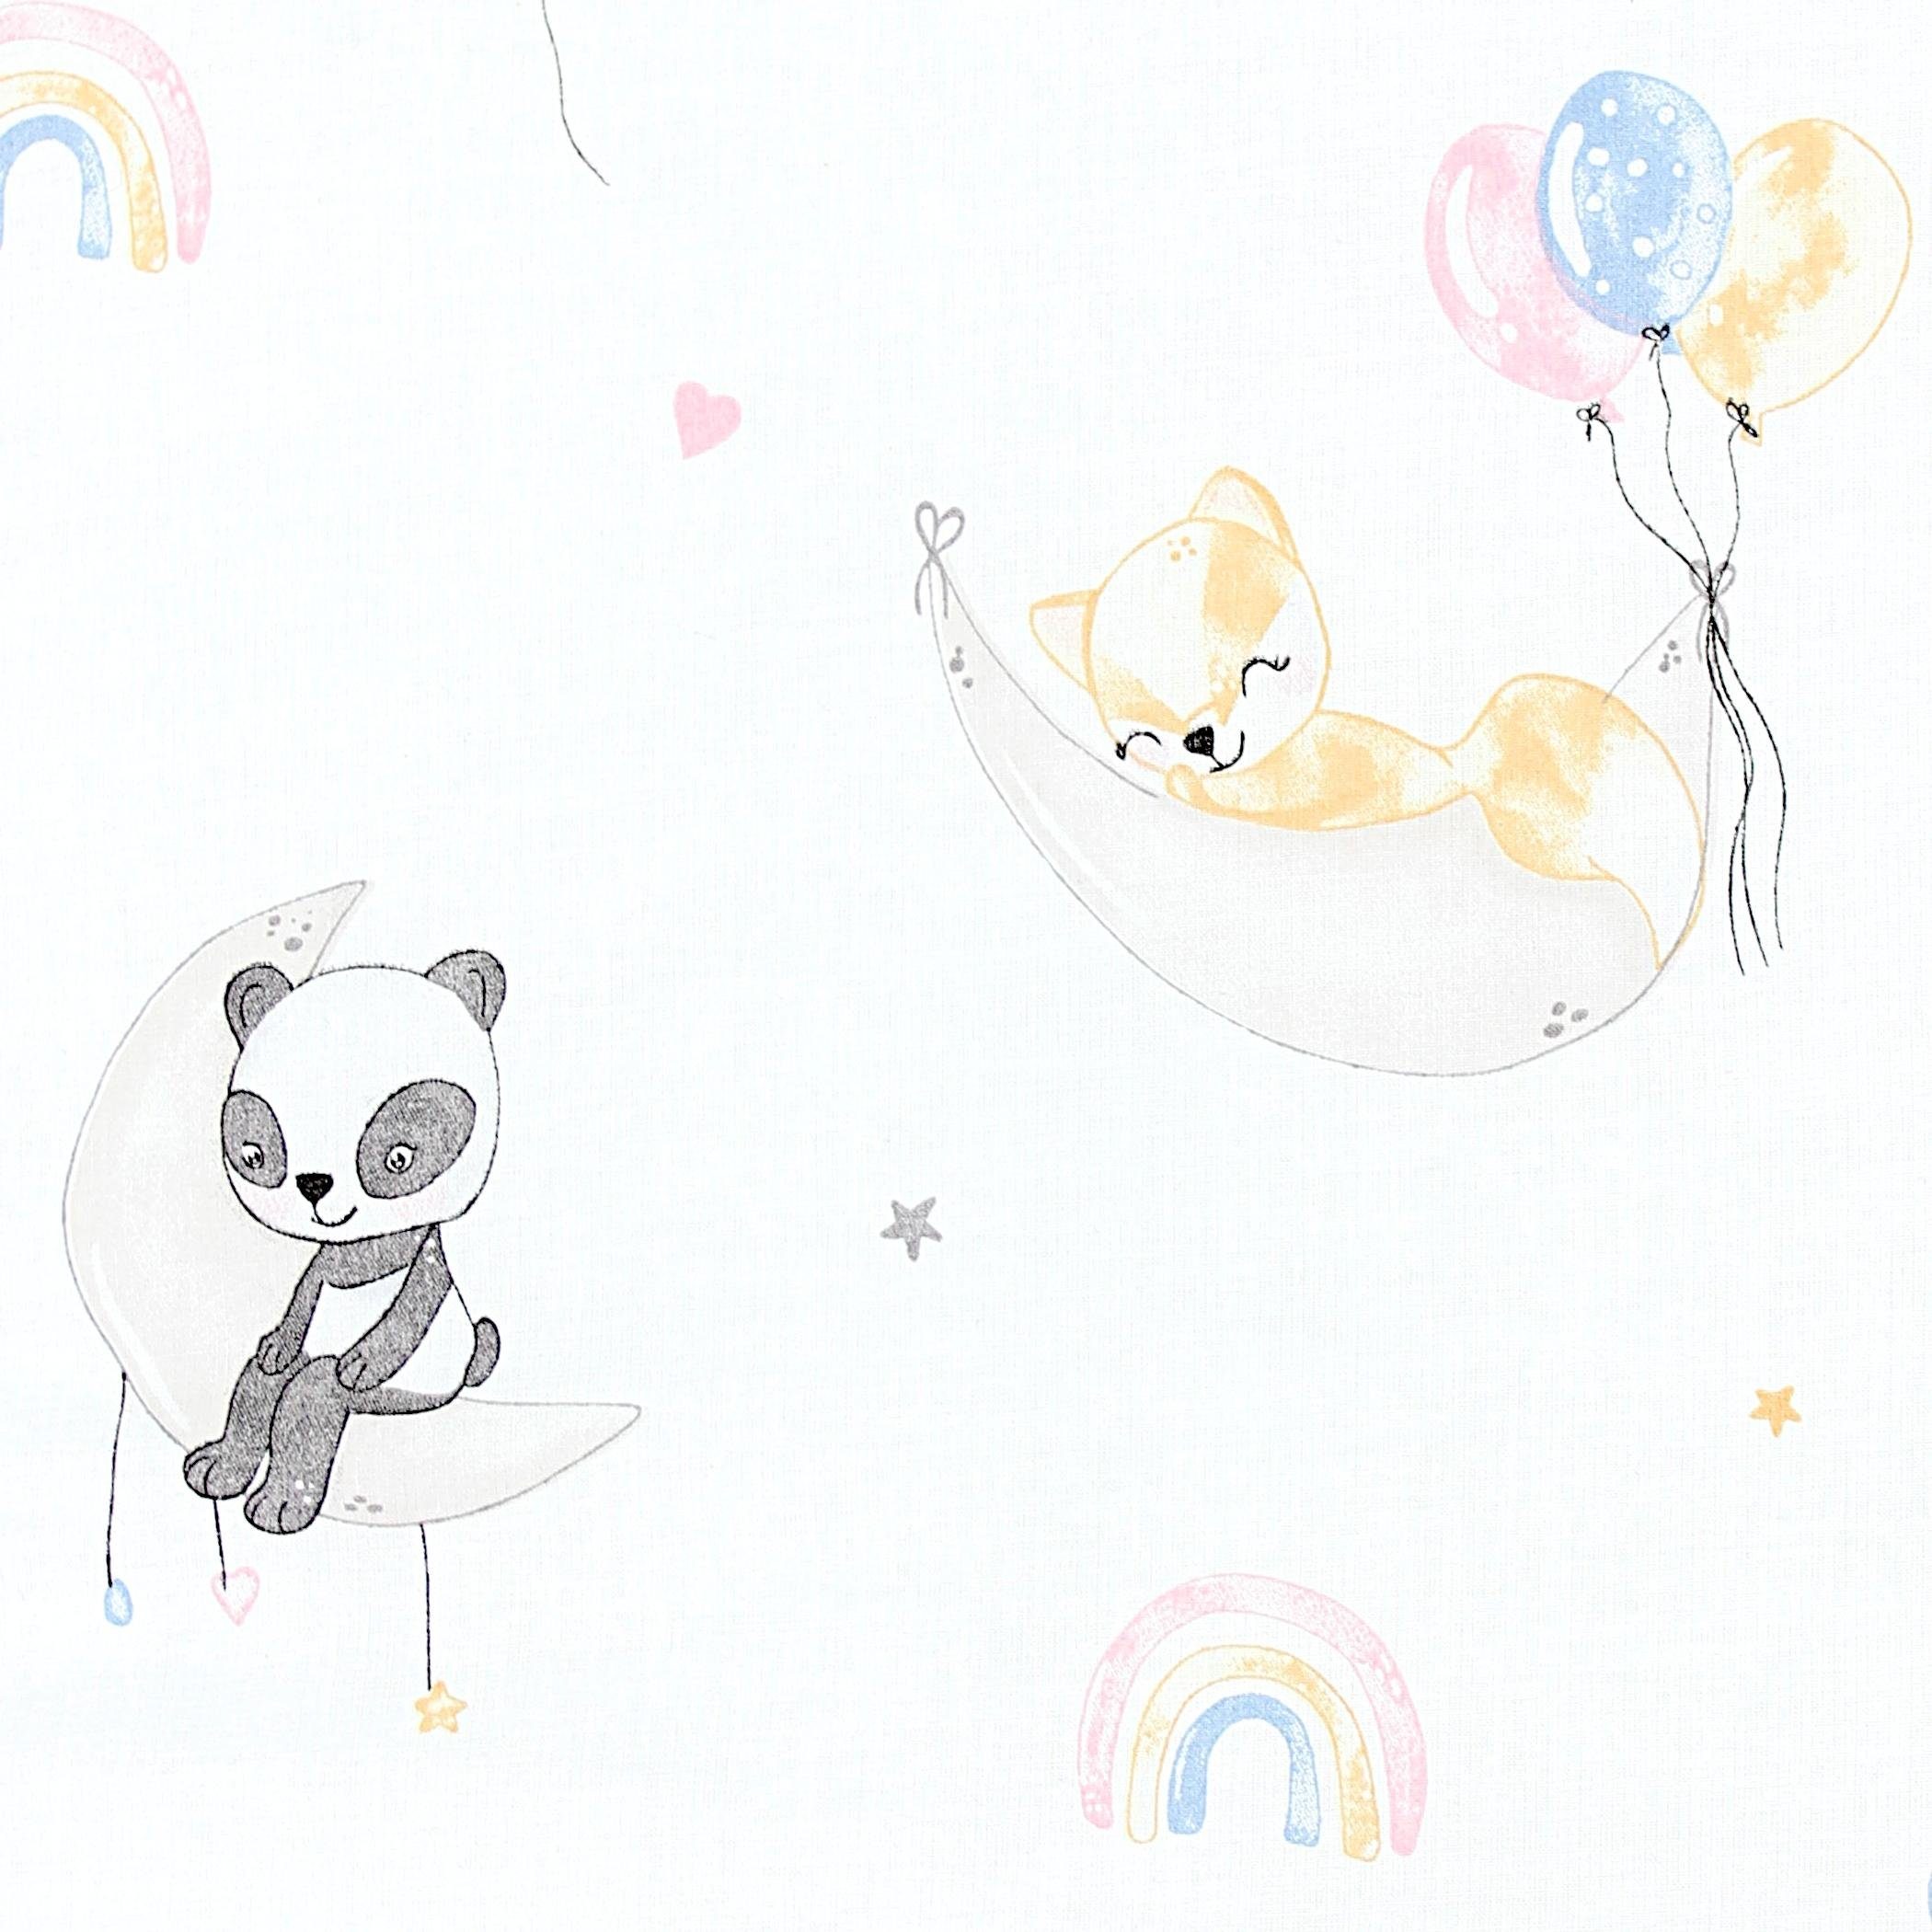 / Wickeltischauflage / Baby Mond TupTam Wickelauflage mit Luftballons Baumwollbezug TupTam Tiere Gemustert